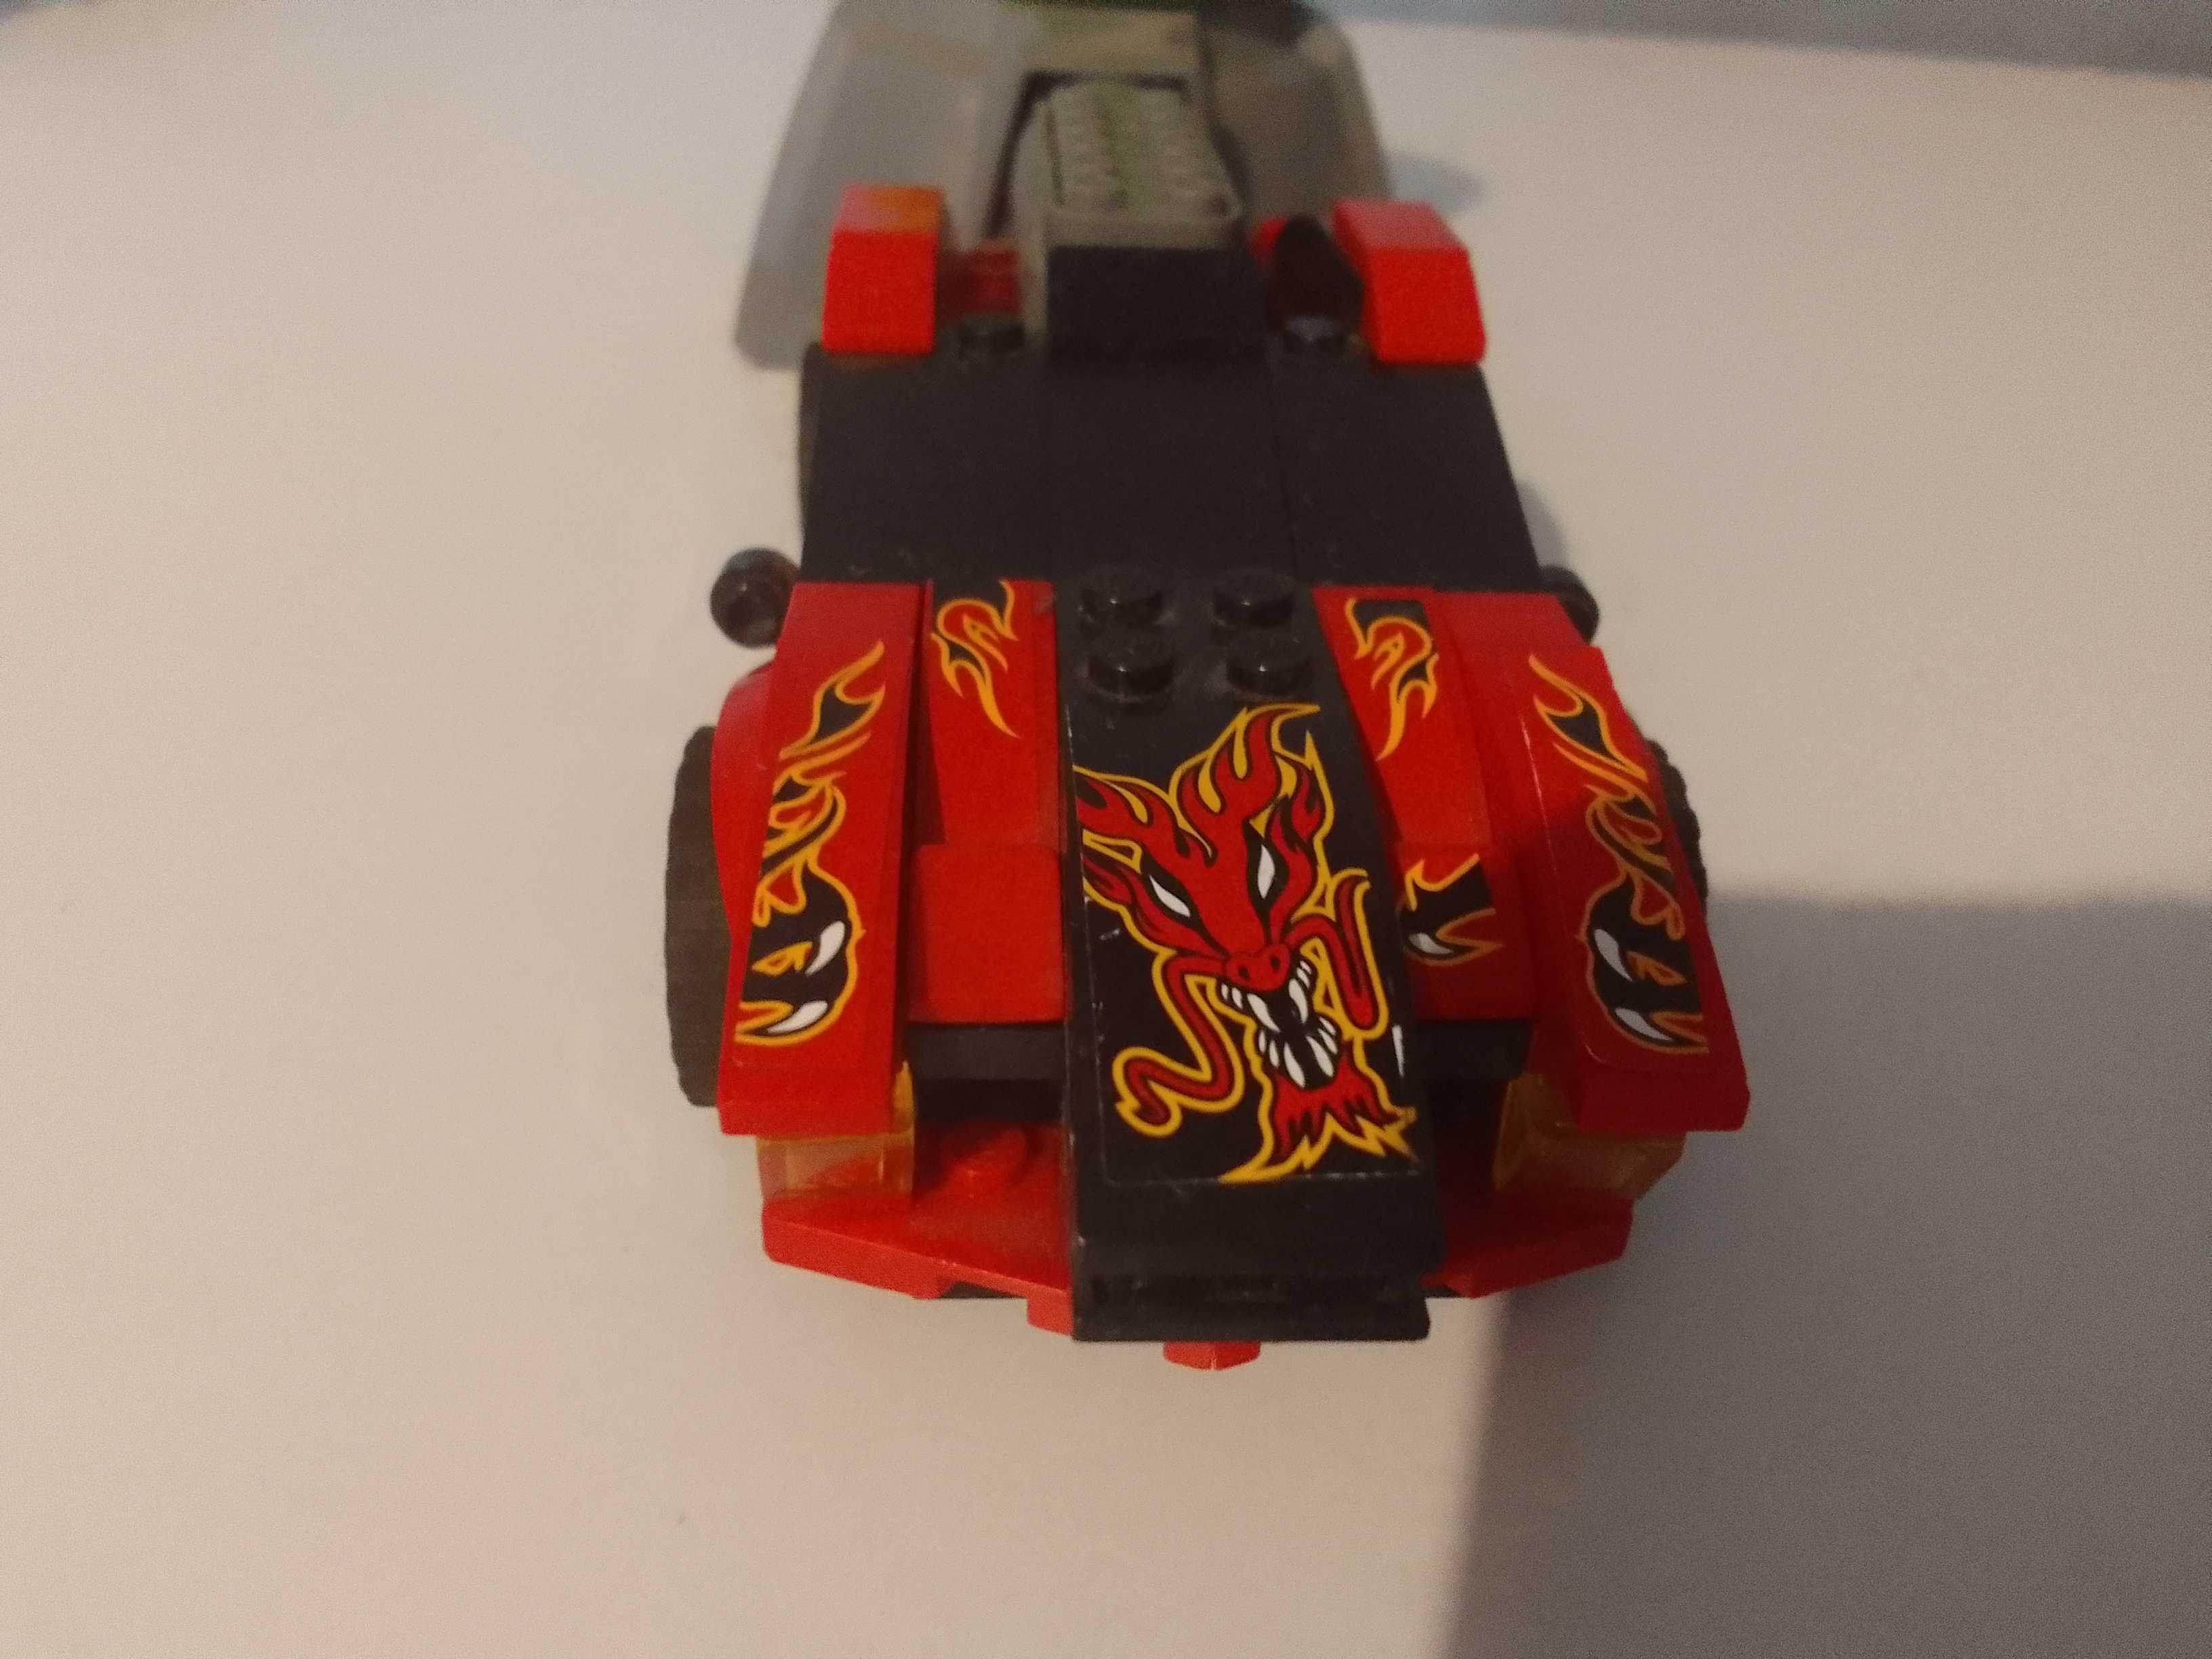 Lego auta, białe speed champion, czerwone napędzane powietrzem